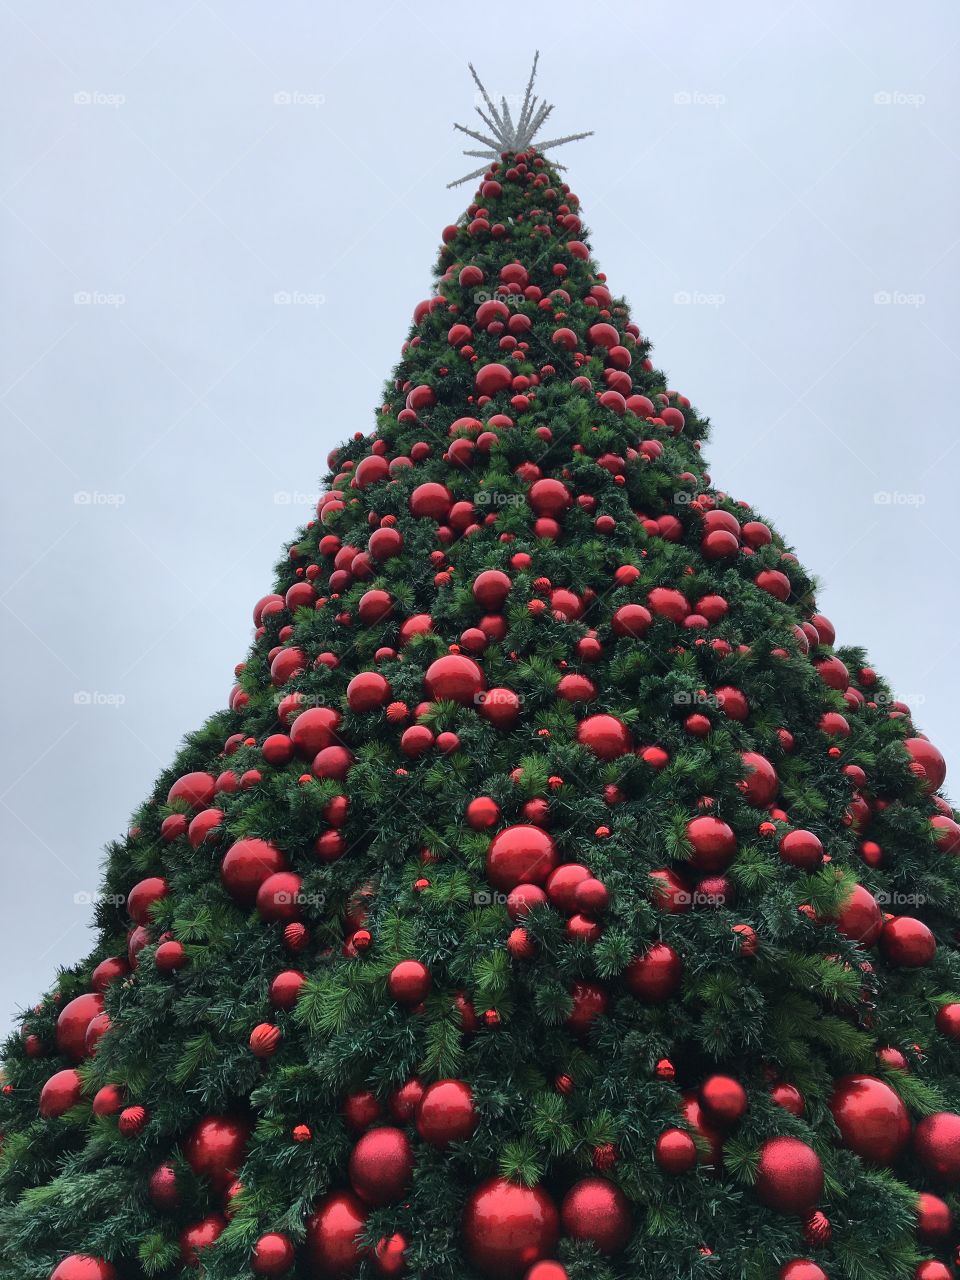 Pretty Christmas tree